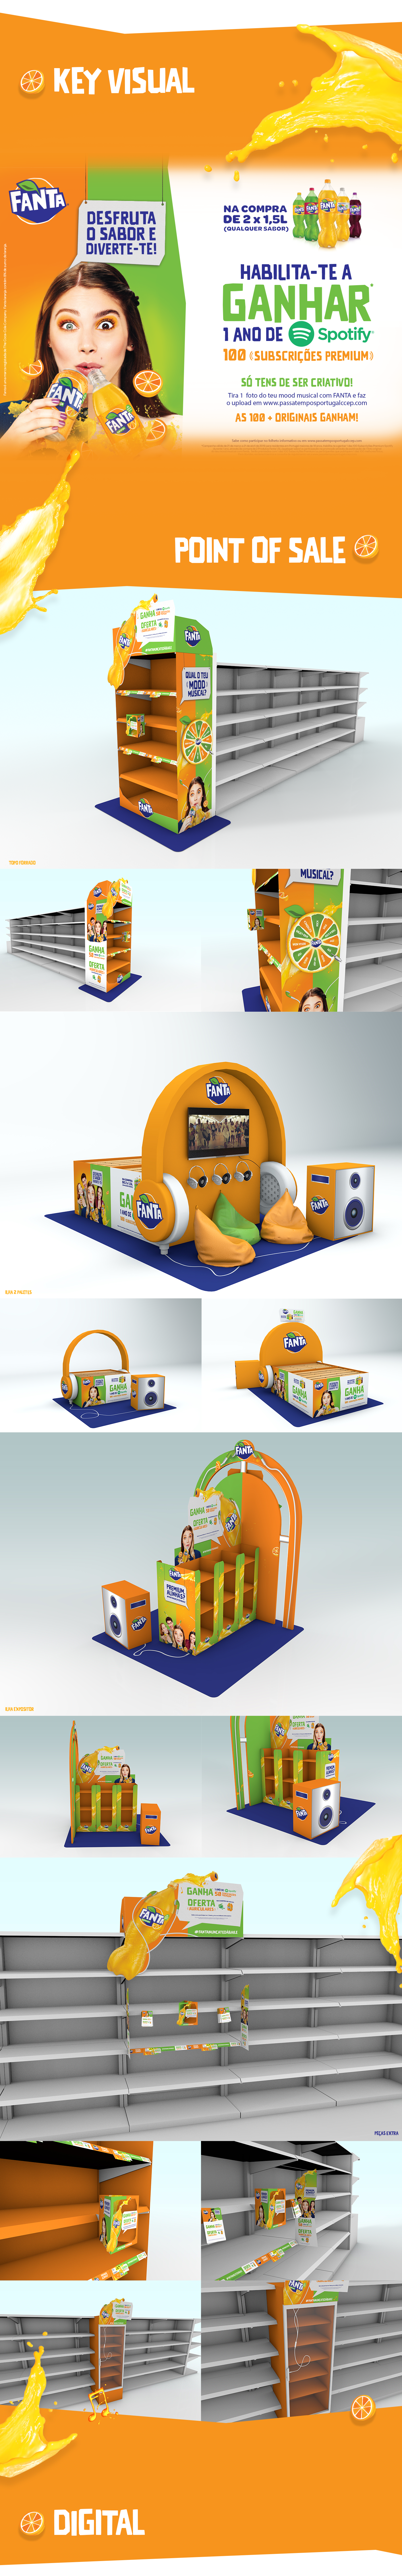 pos design 3D branding  campaign publicity Point of Sale digital content